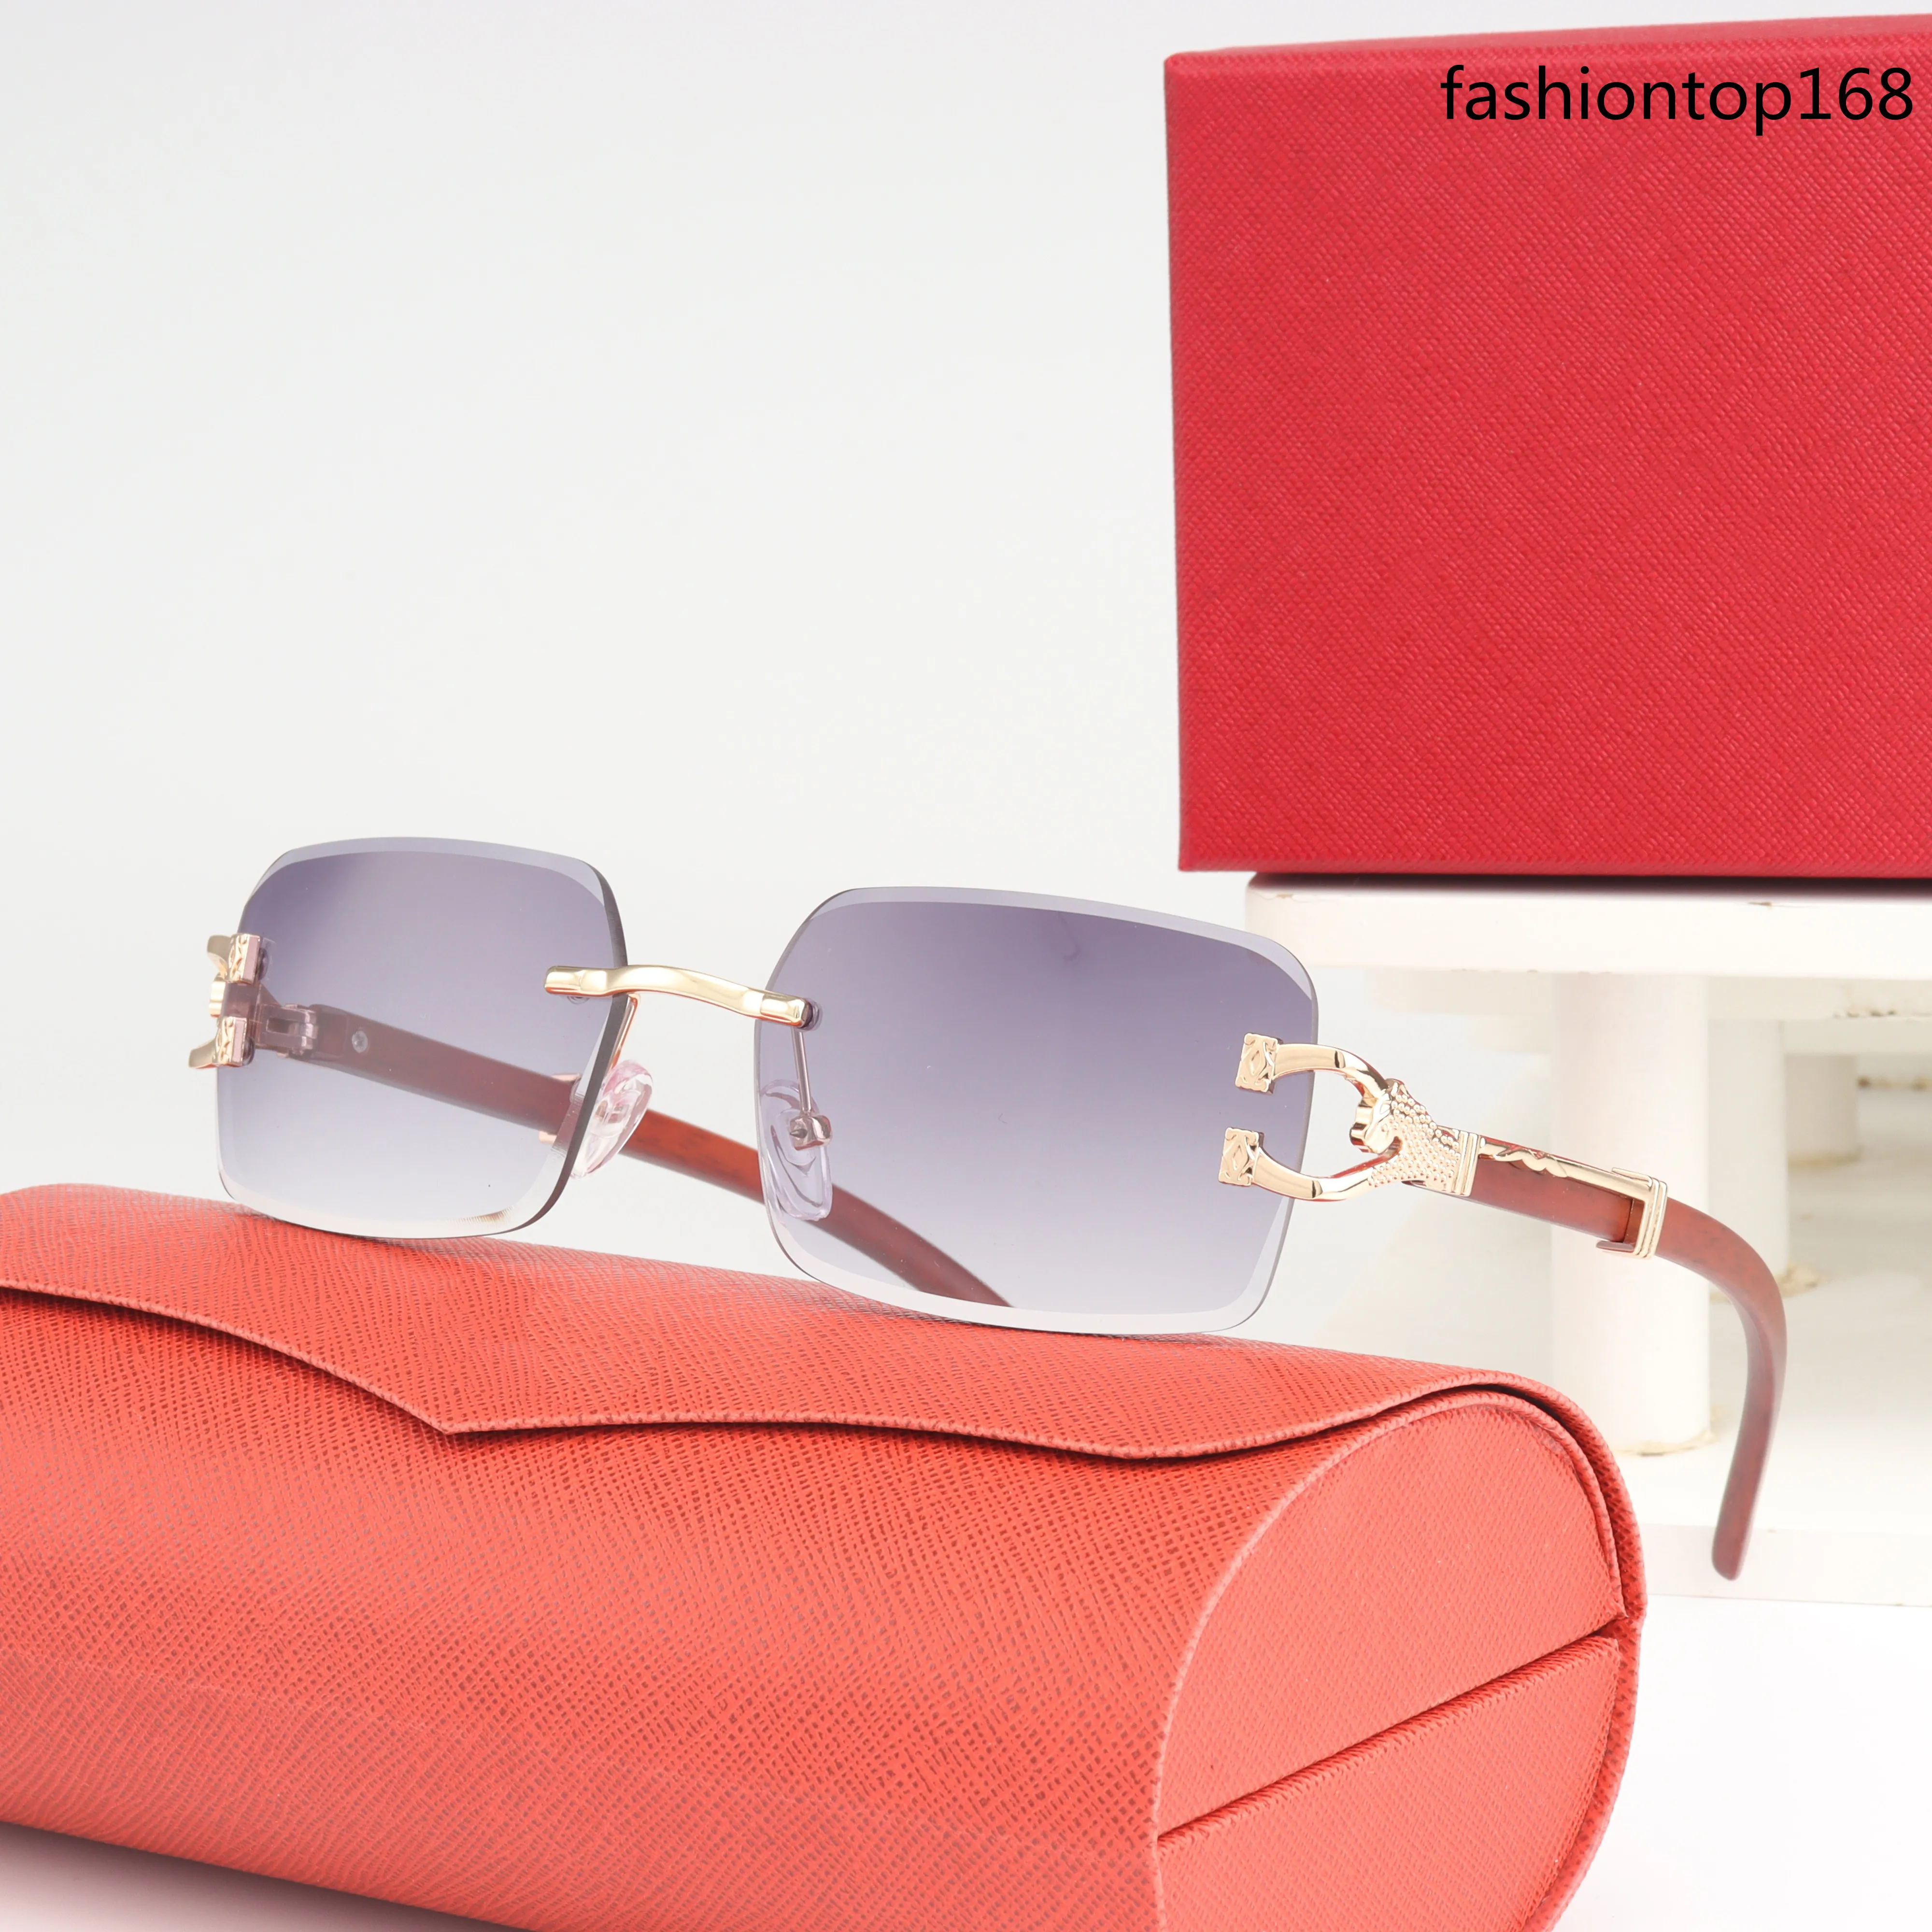 Nuovi occhiali da sole stilisti design senza bordo lenti colorate in stile popolare Uv400 Visualizzazione protettiva